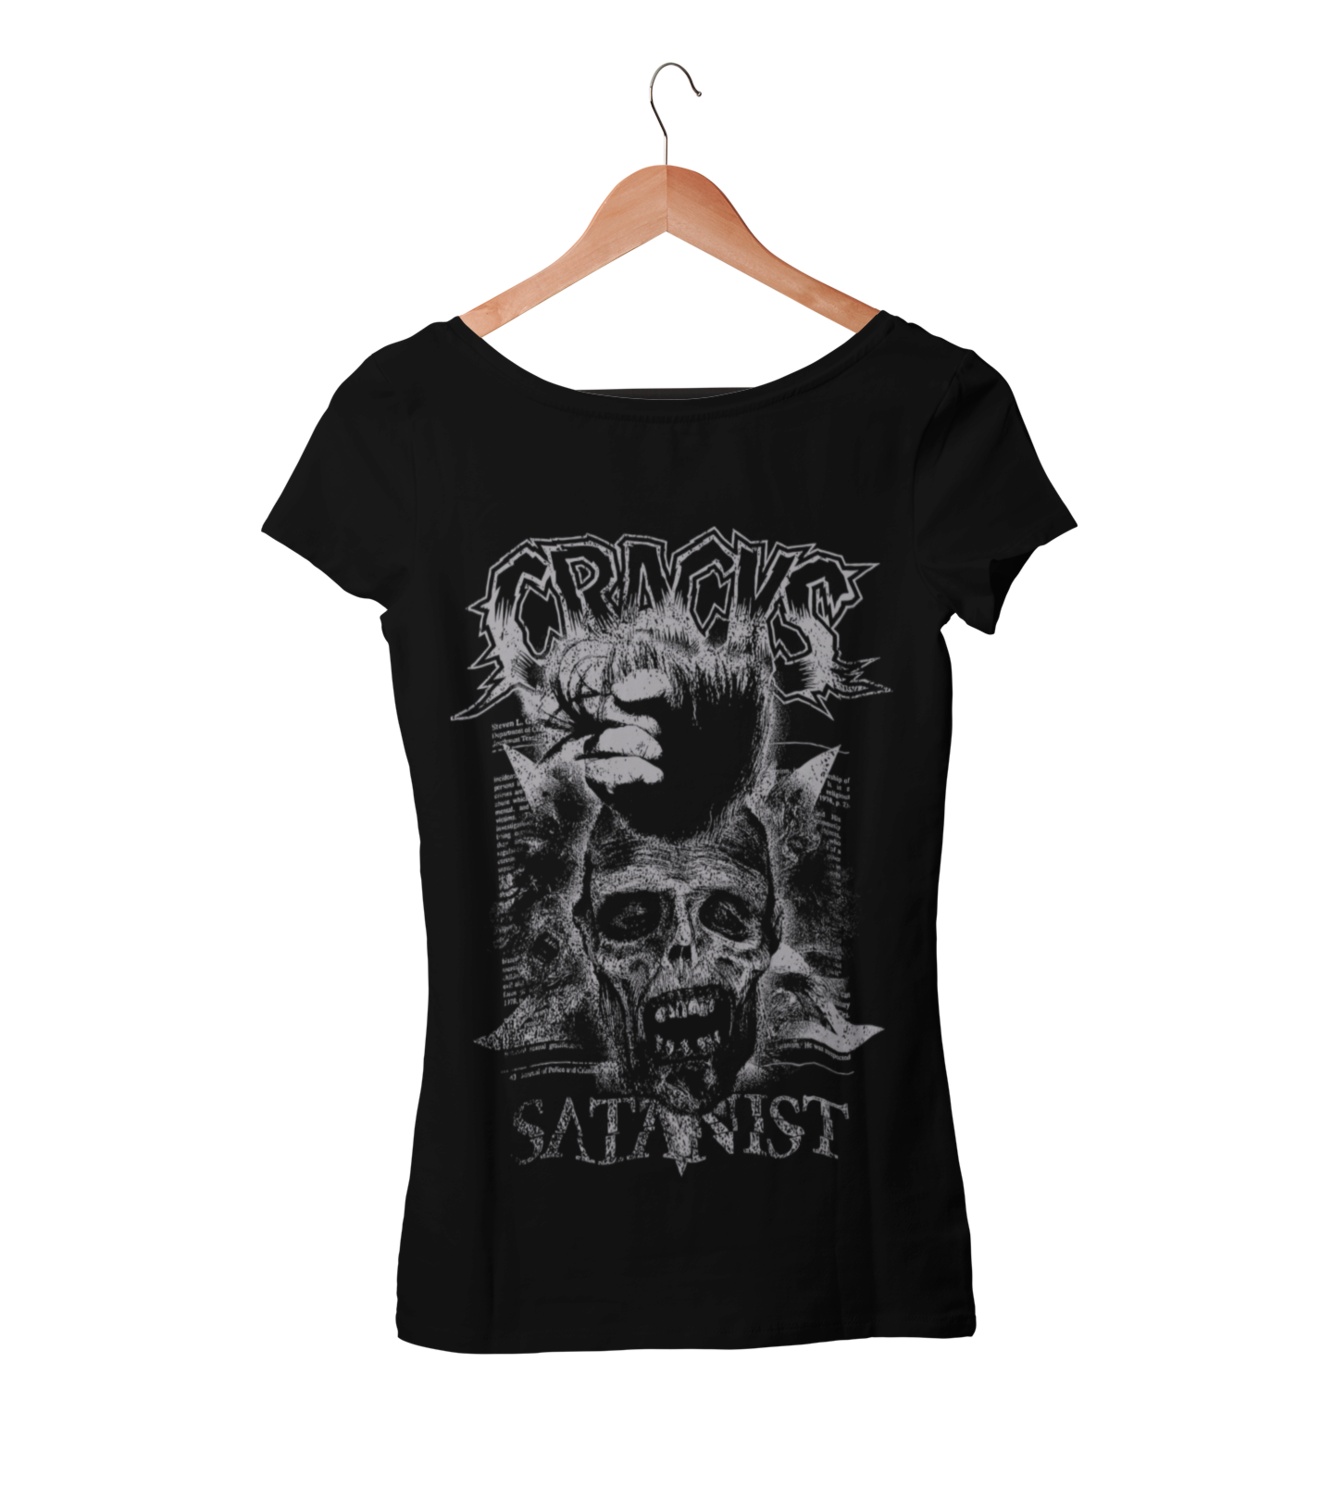 CRACKS "Satanist"  tshirt for WOMEN